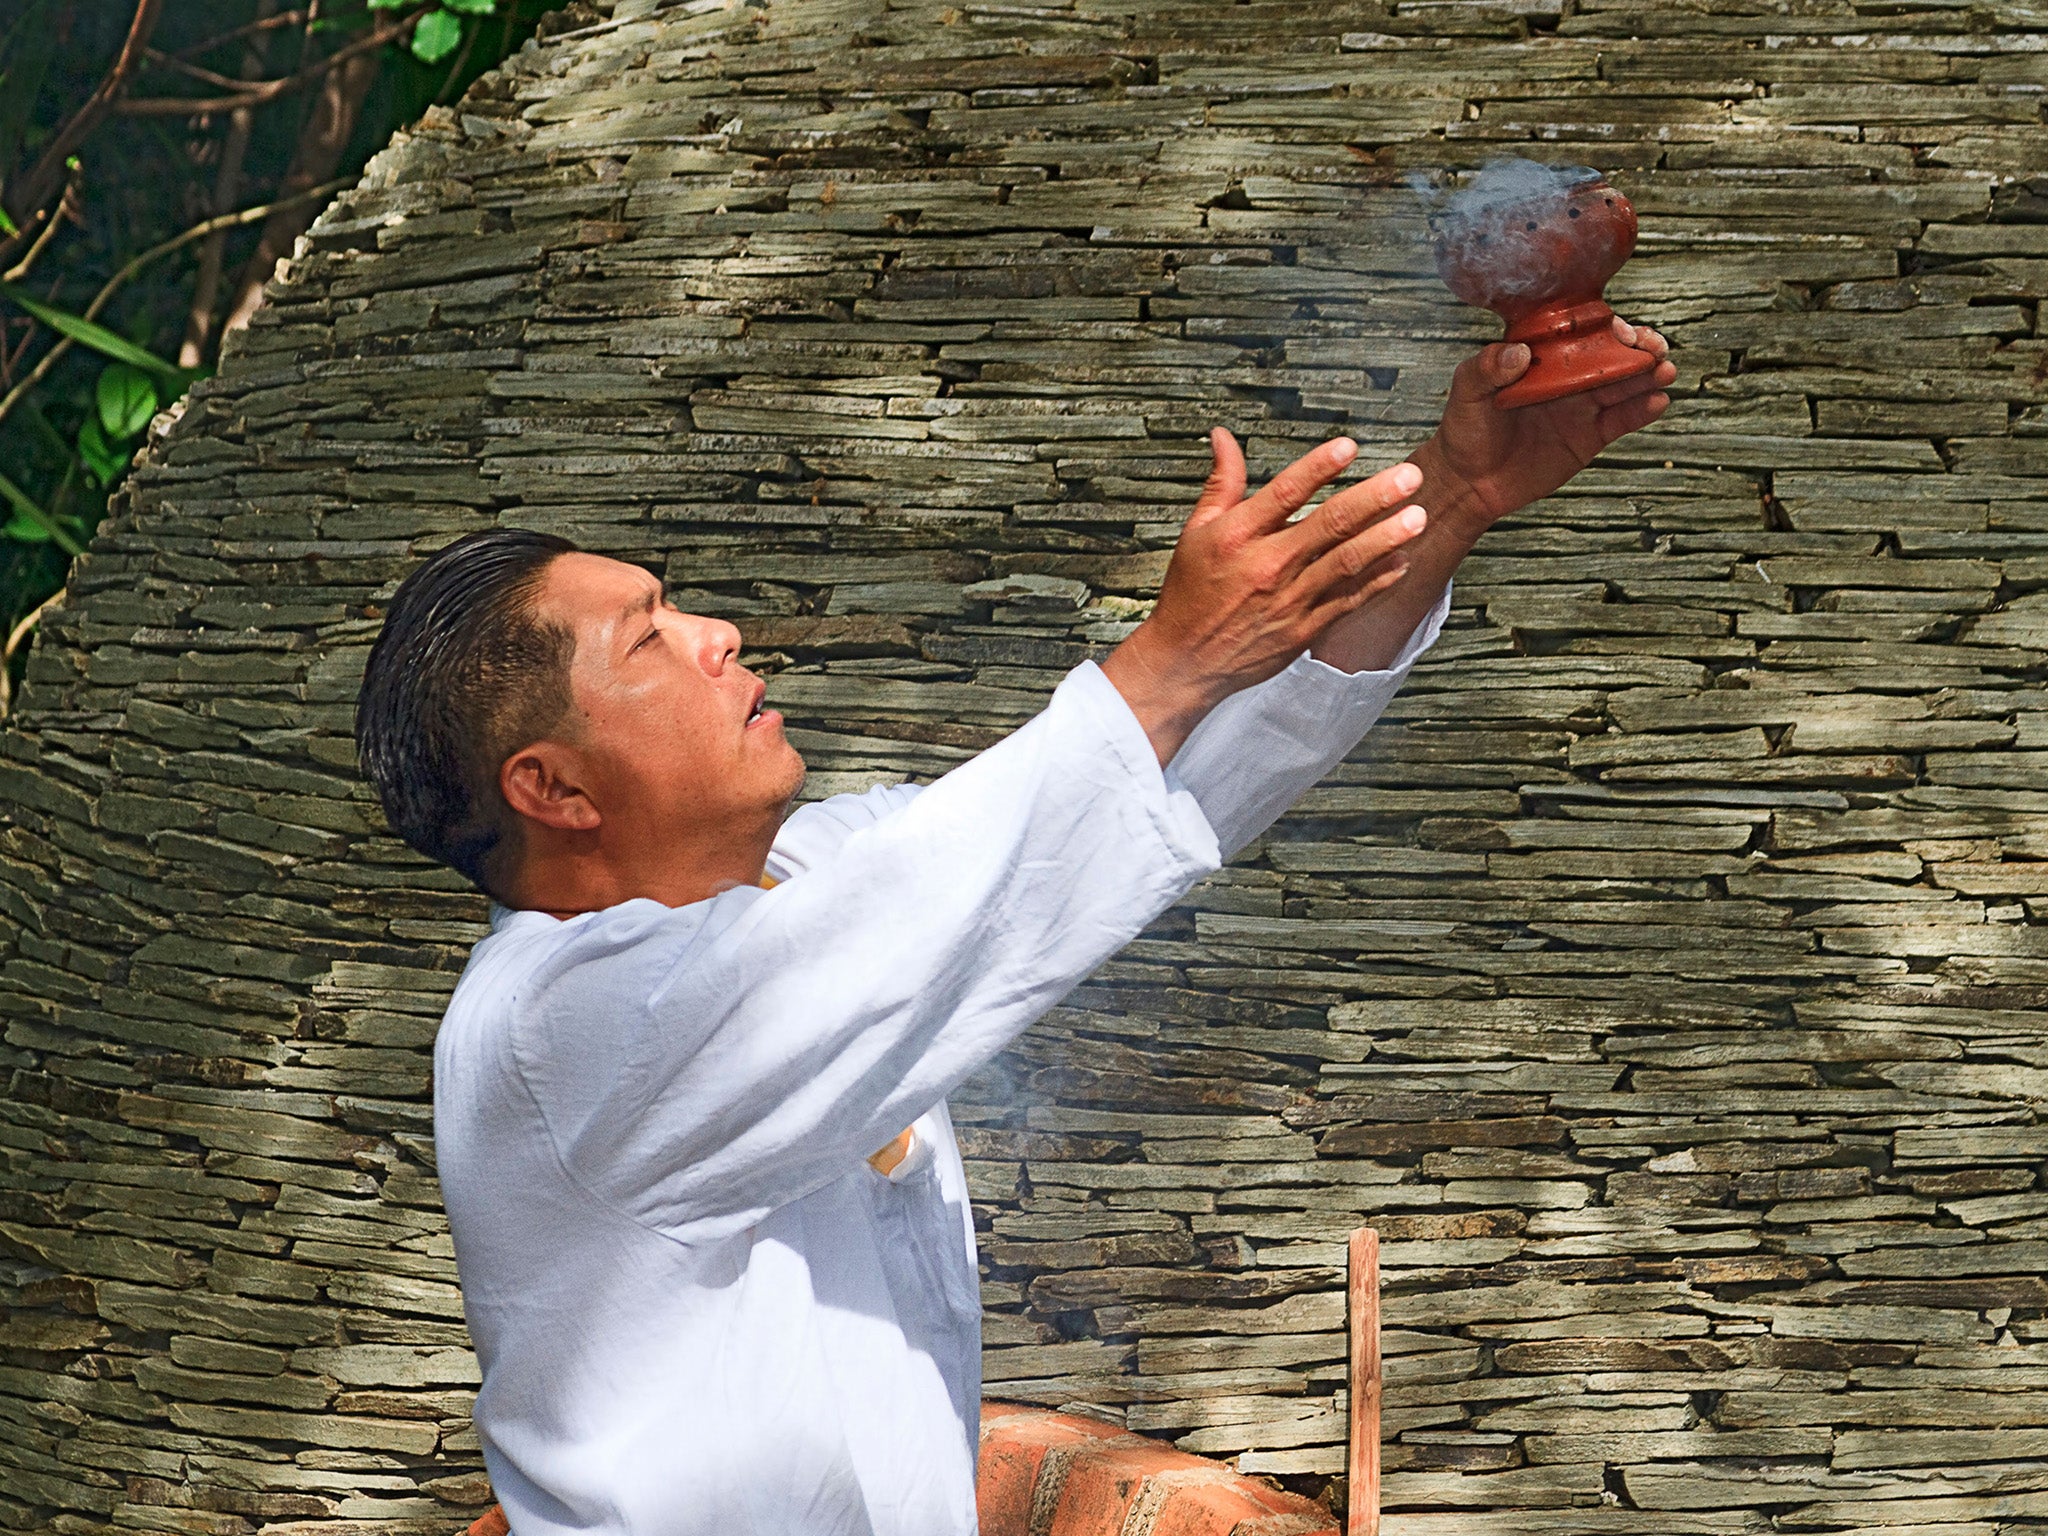 Maya Shaman greets visitors with ritual smoke from Copal resin